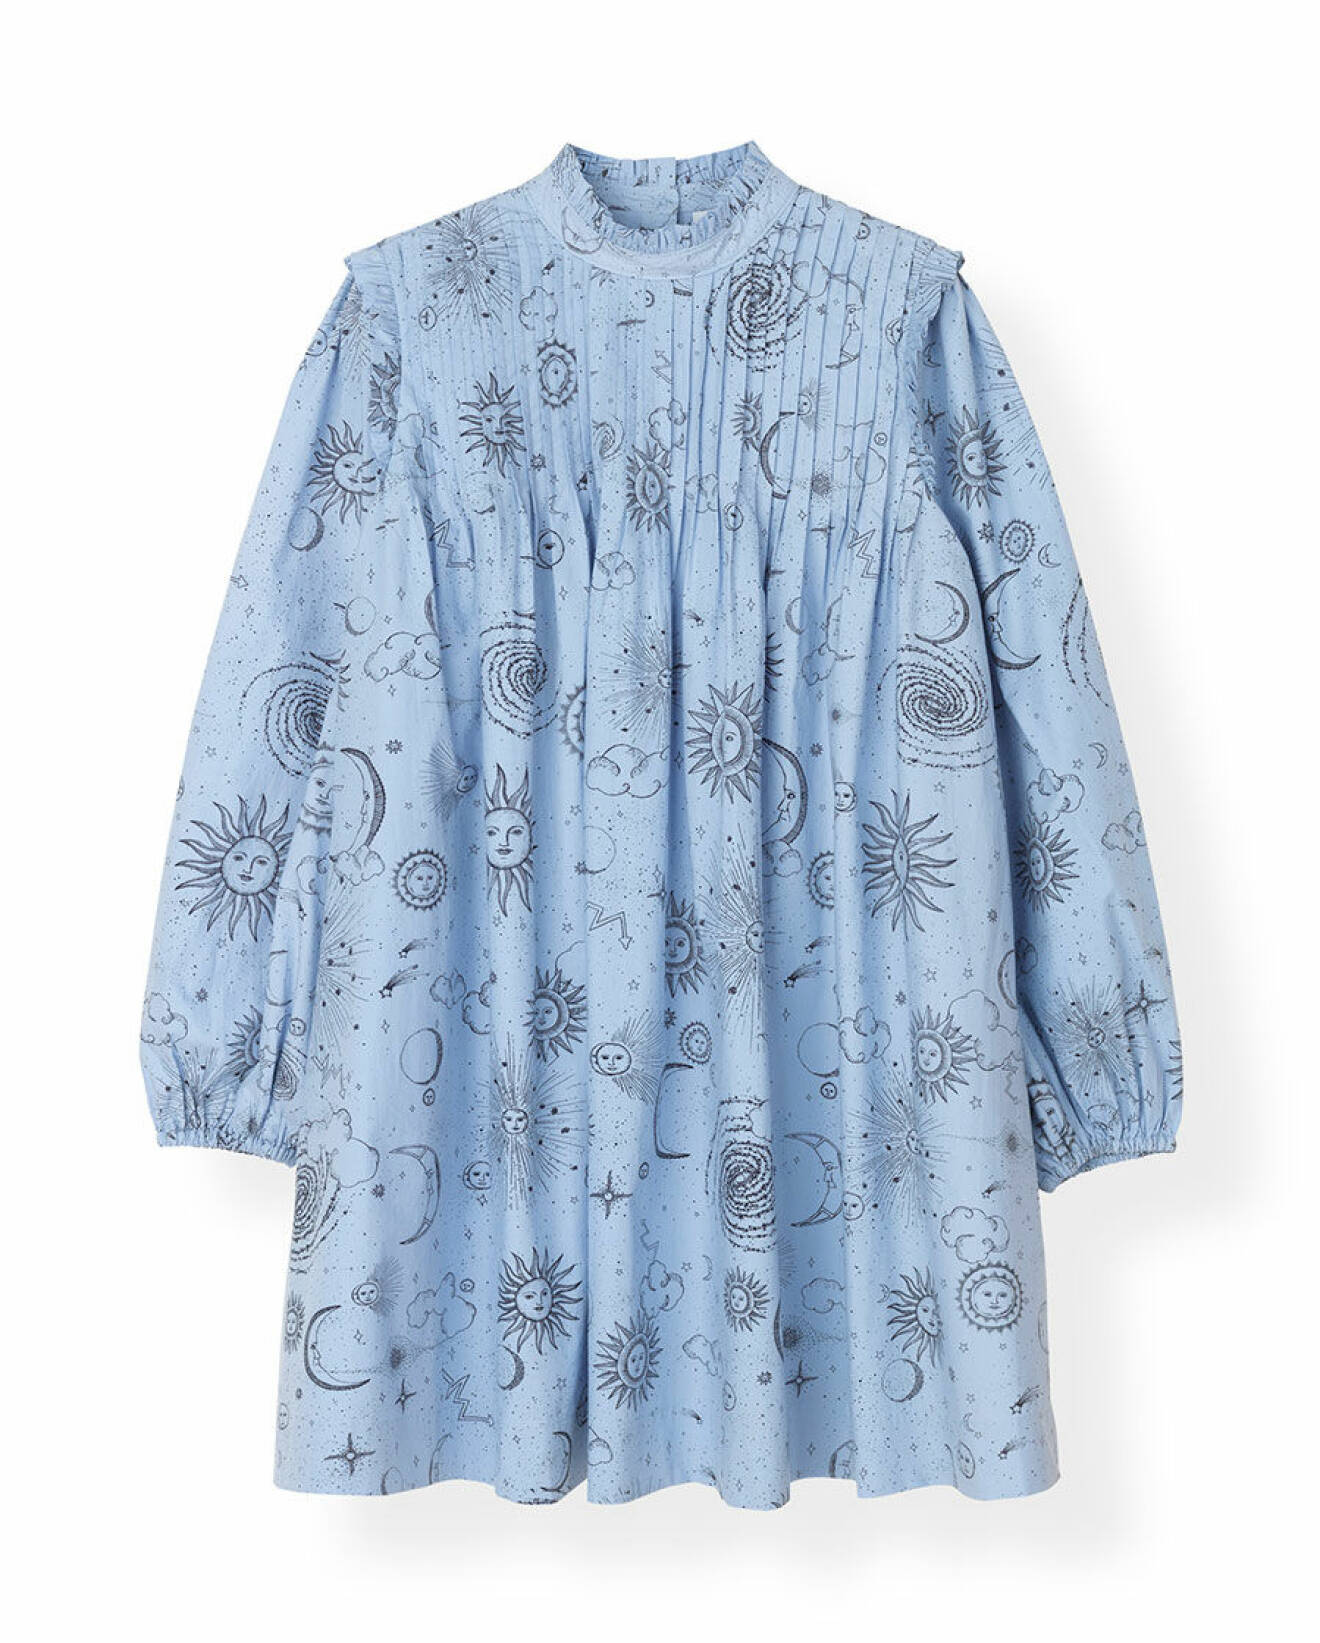 Ljusblå miniklänning med astro-inspirerat mönster och detaljerad krage. Shoppa den här!